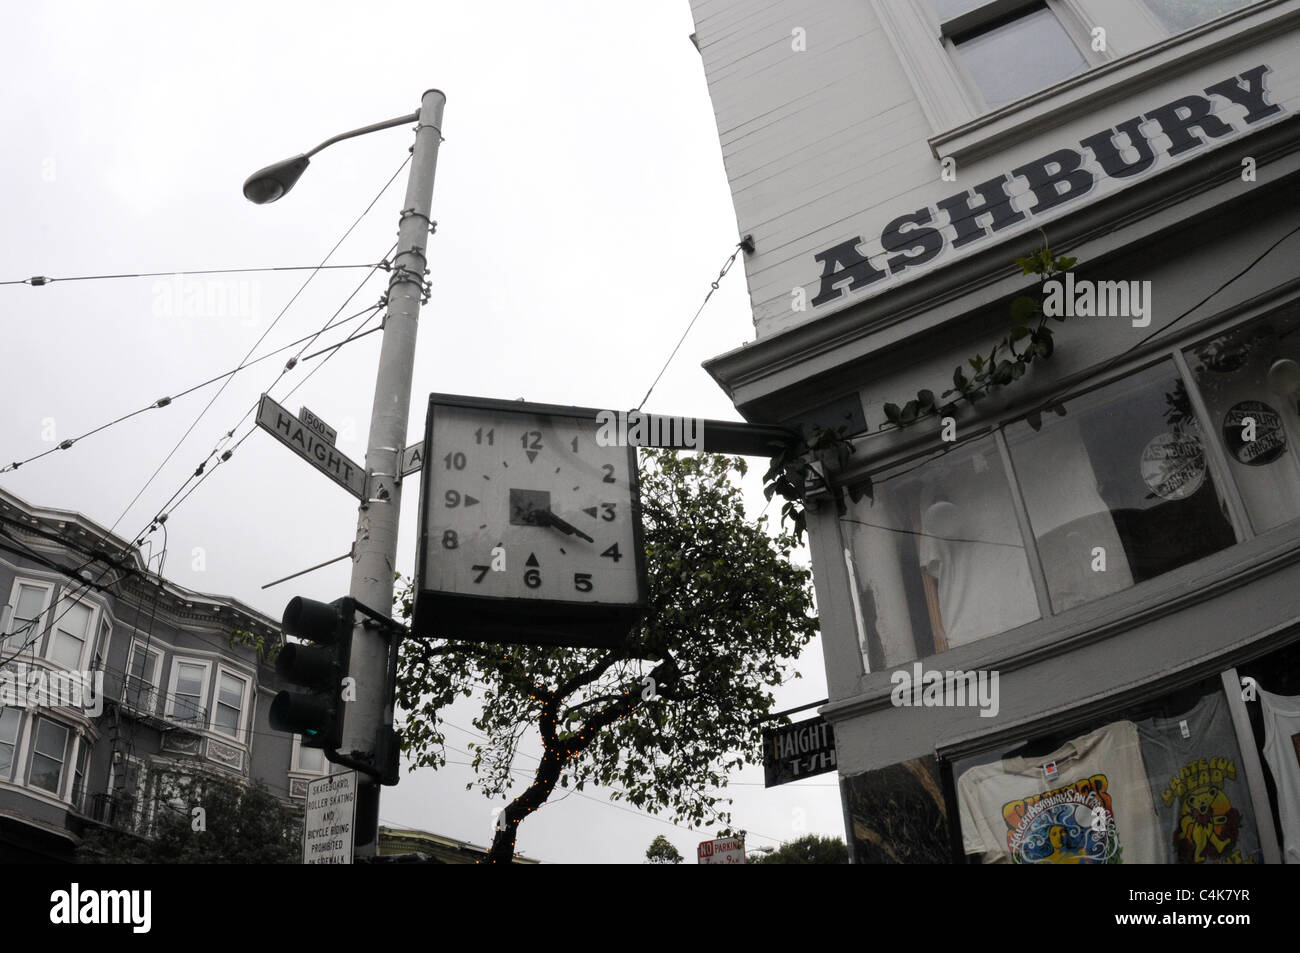 Le 4:20 horloge dans le coin de Haight Ashbury, San Francisco, Californie, Décembre 2010 Banque D'Images